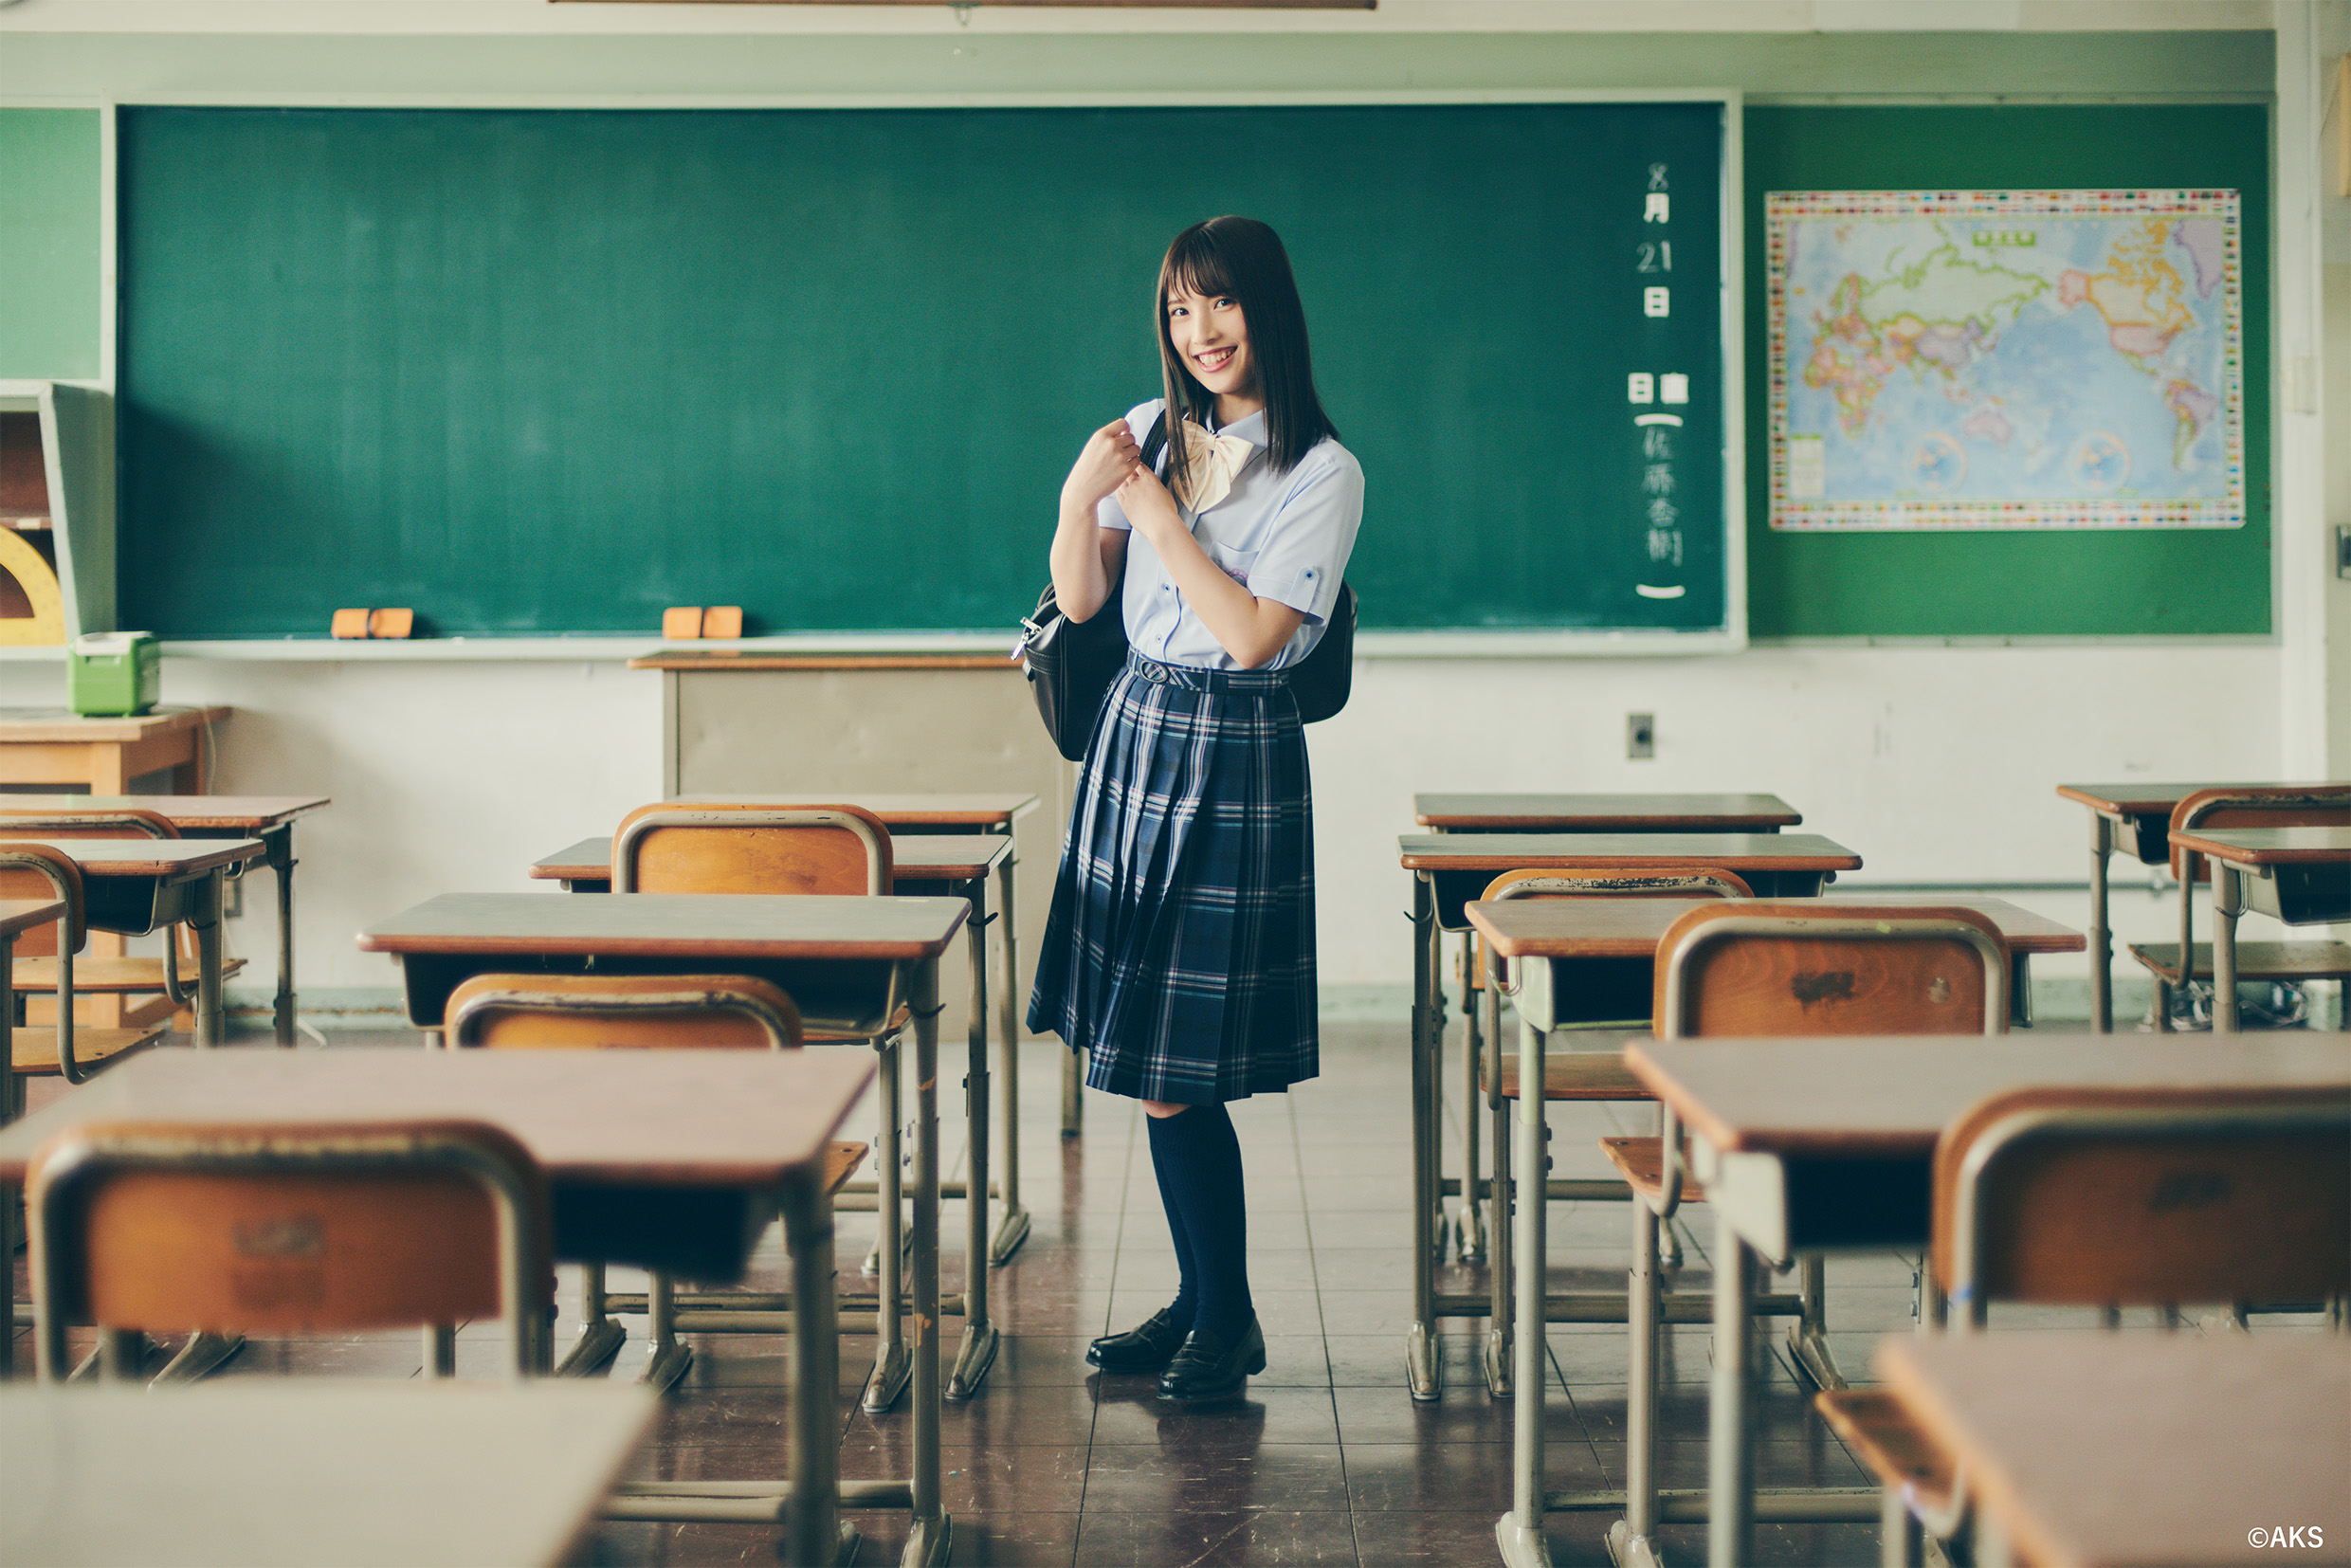 オサレカンパニーの手掛ける学校制服ブランドO.C.S.D. 2018年採用校の夏服＆初のイメージモデルを発表!! 〜この夏を彩るのは、NGT48のあの子!?〜